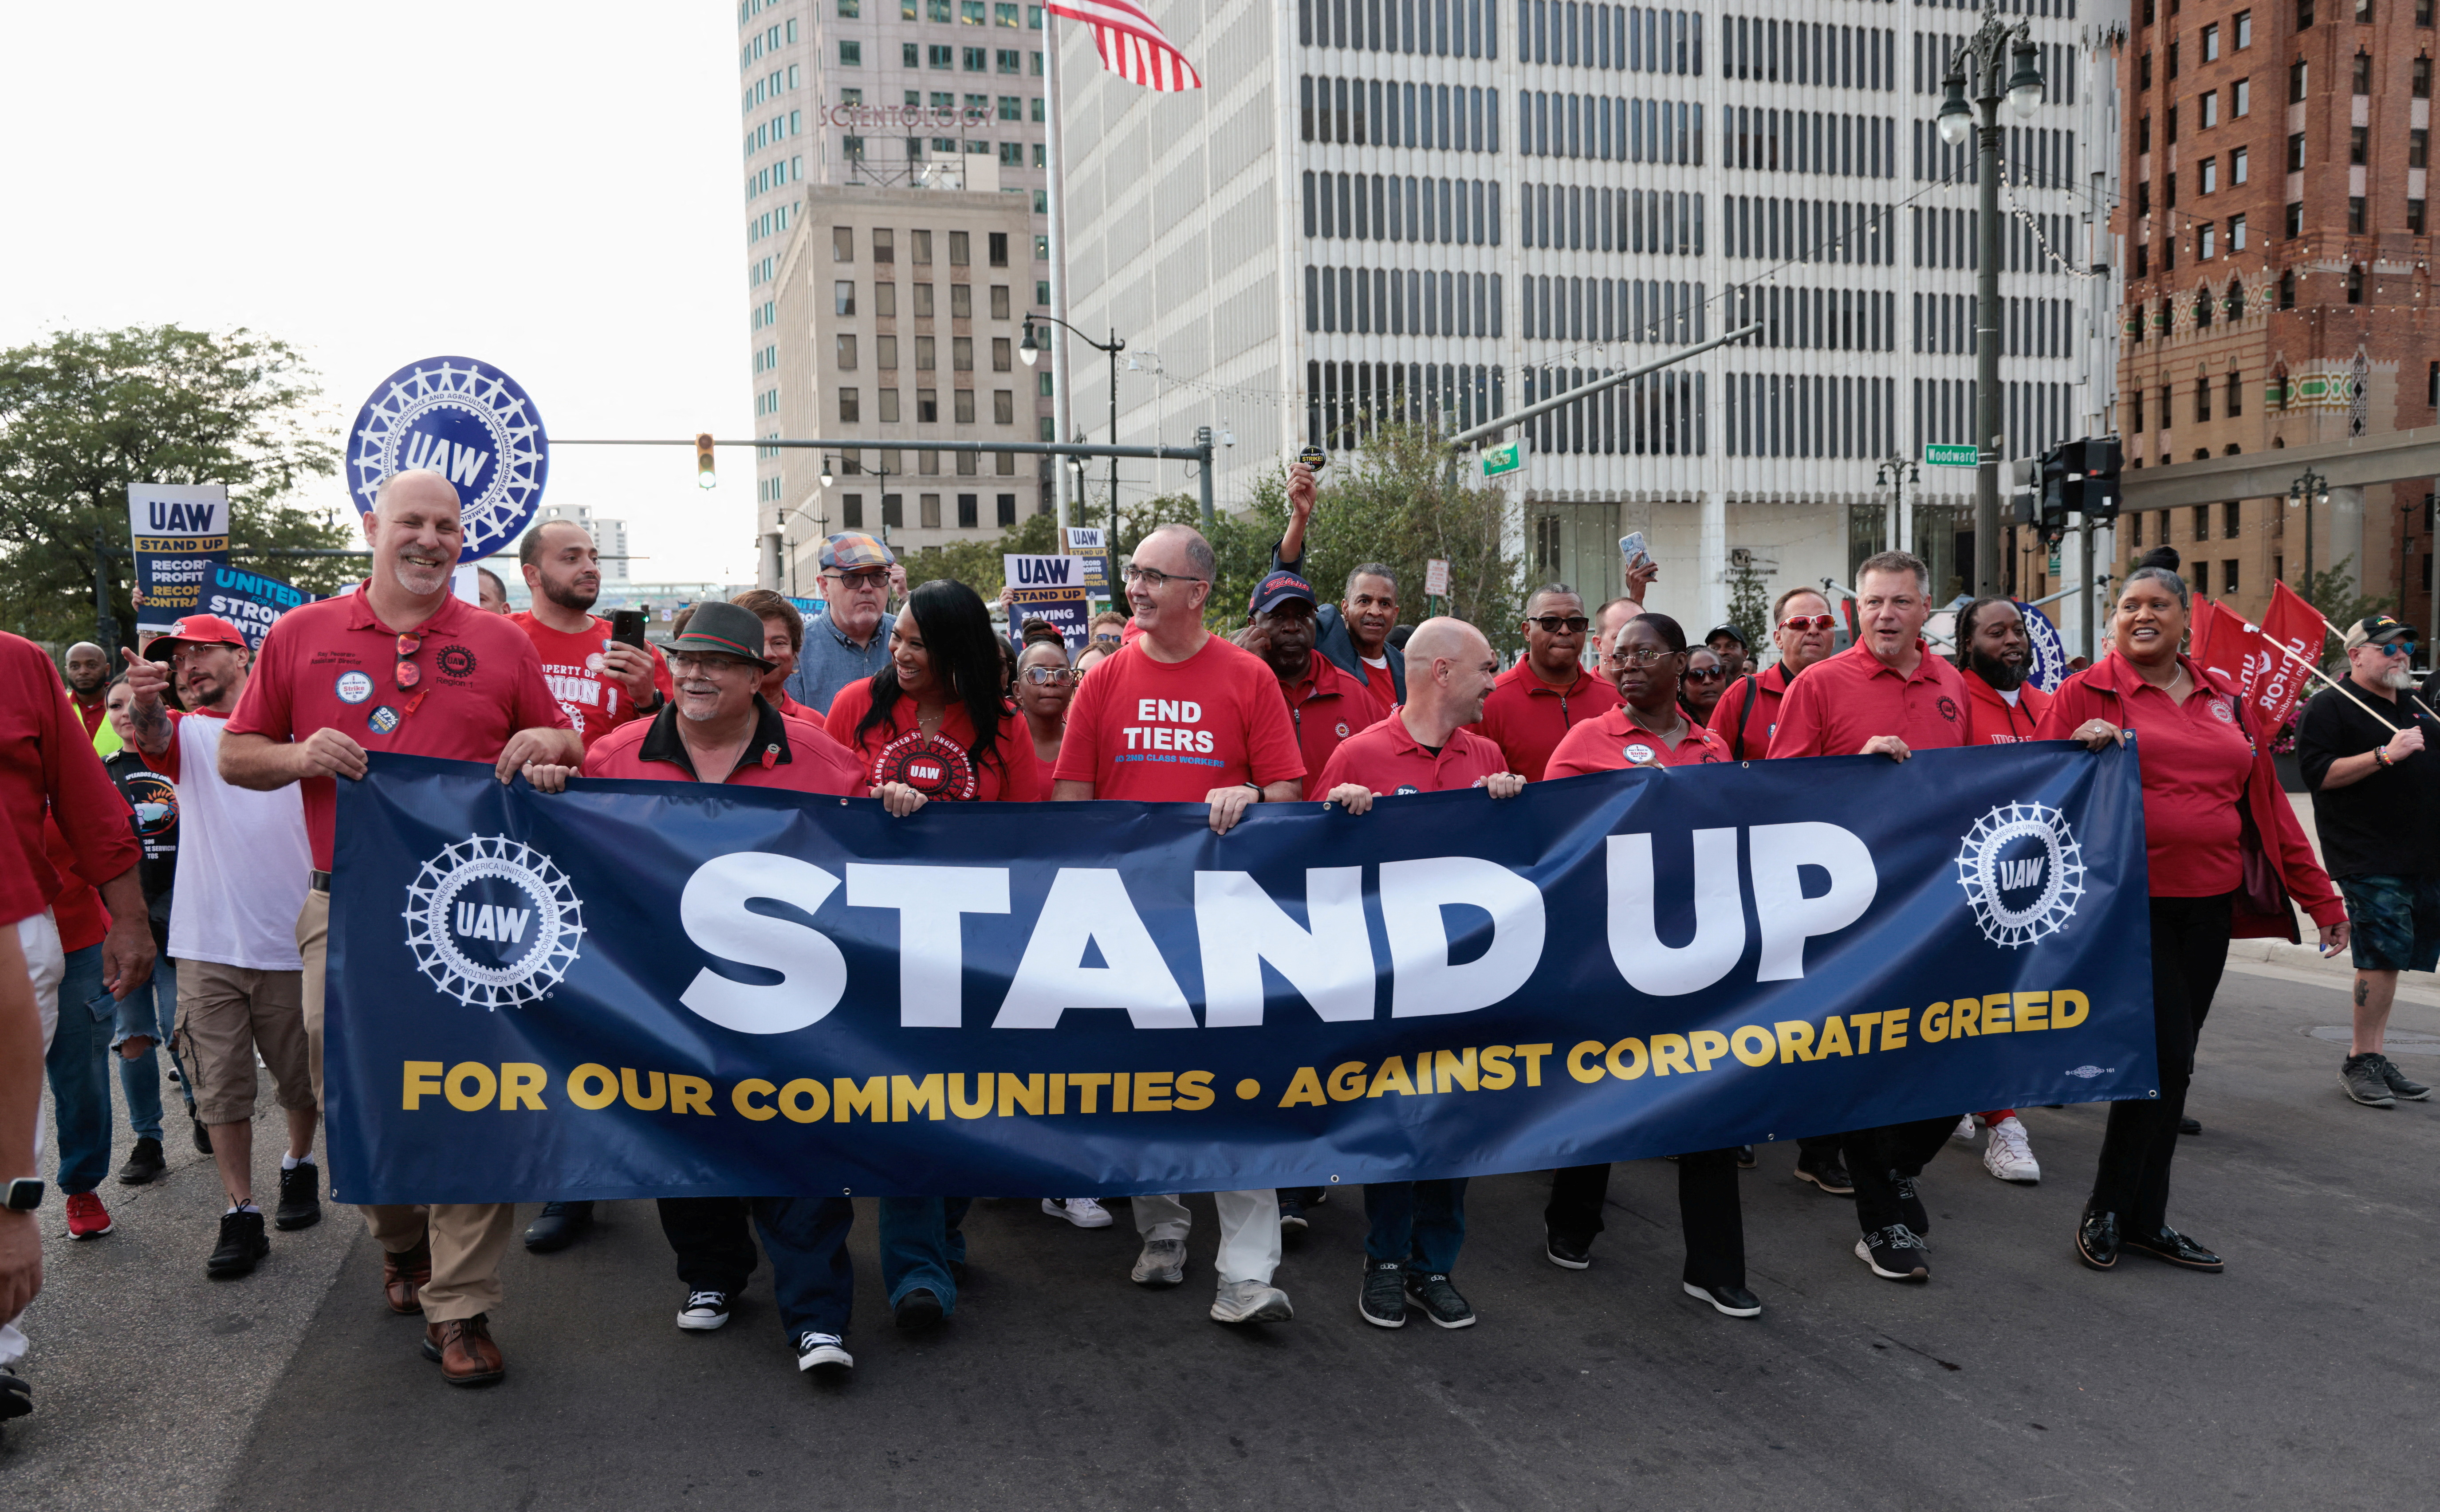 Le syndicat américain de l'automobile UAW menace les Big Three de durcir la grève (Stellantis, GM, Ford)